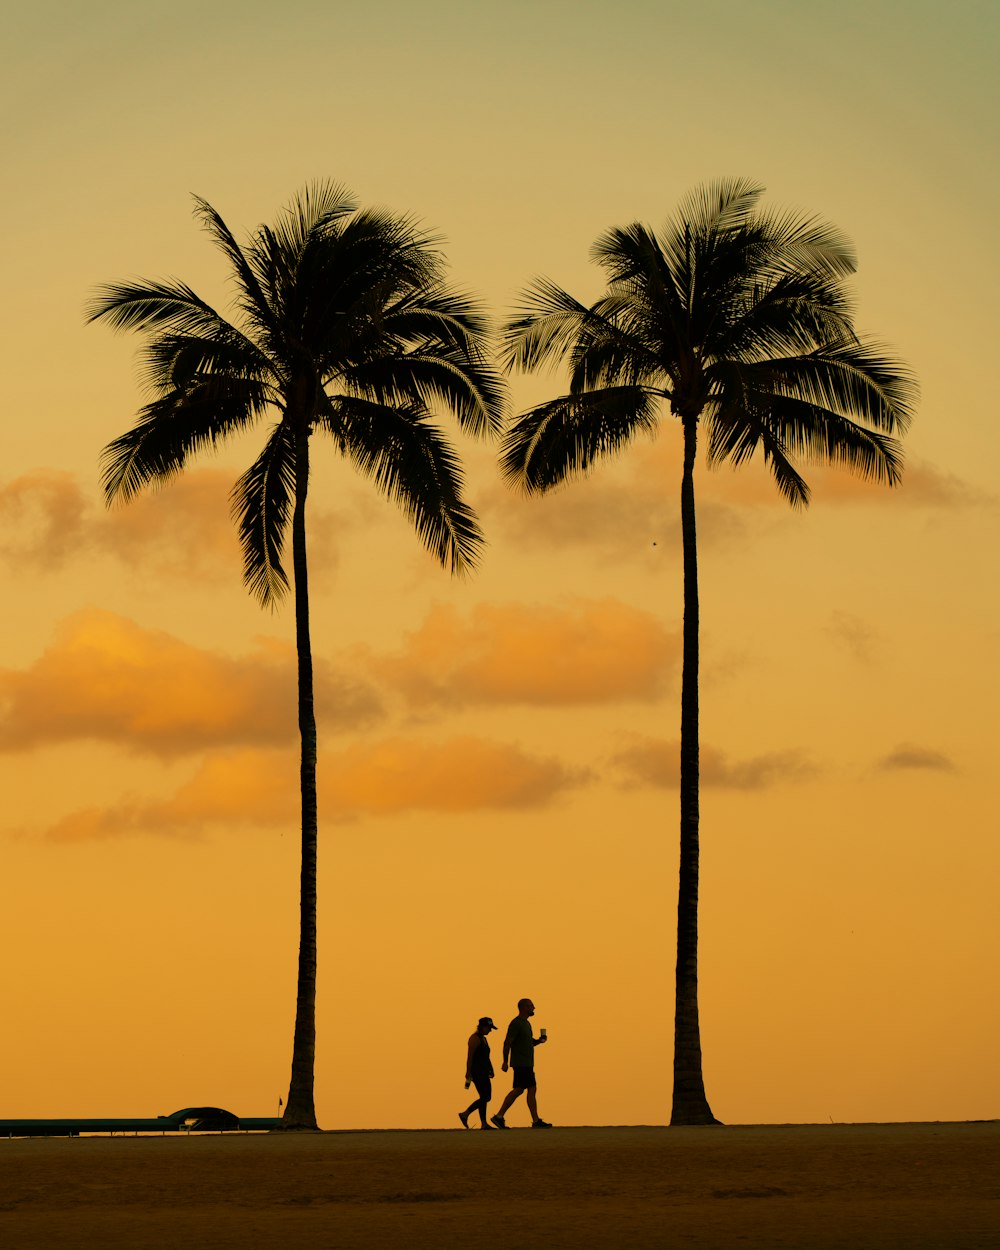 두 개의 야자수 옆에있는 해변을 걷는 두 사람